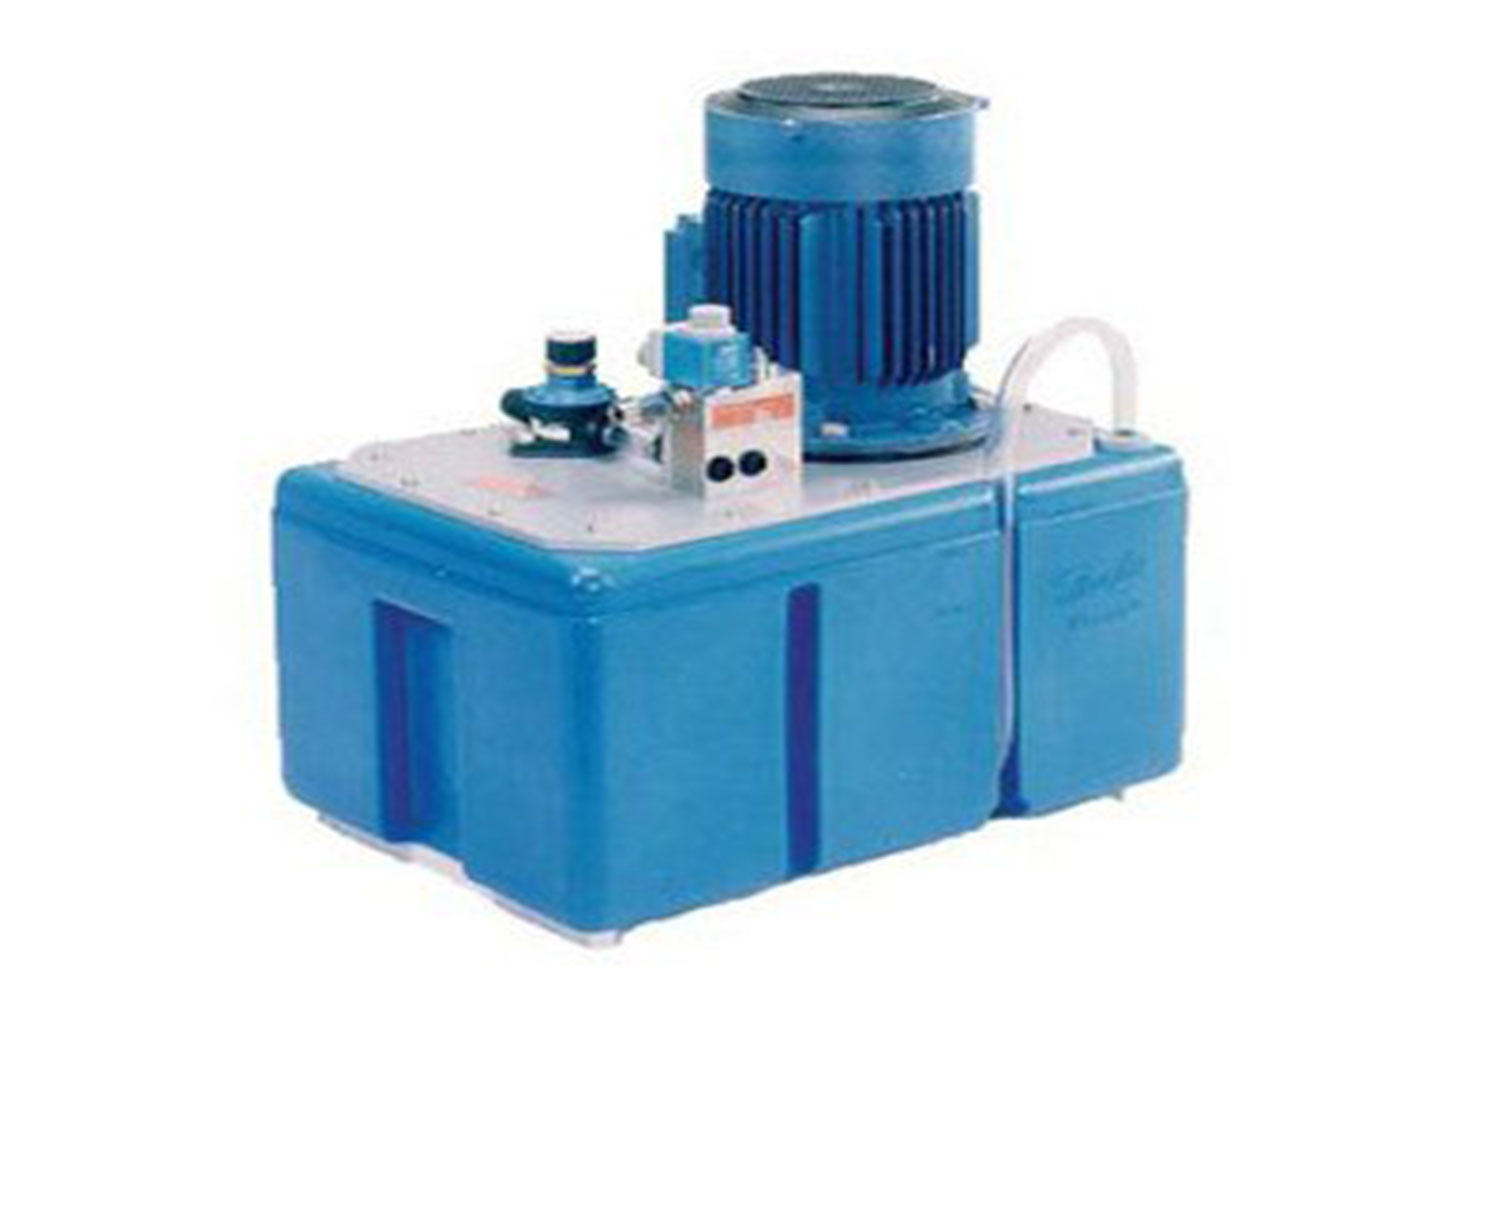 Powerpacks-PPH von Danfoss Nessie Wasserhydraulik, blau